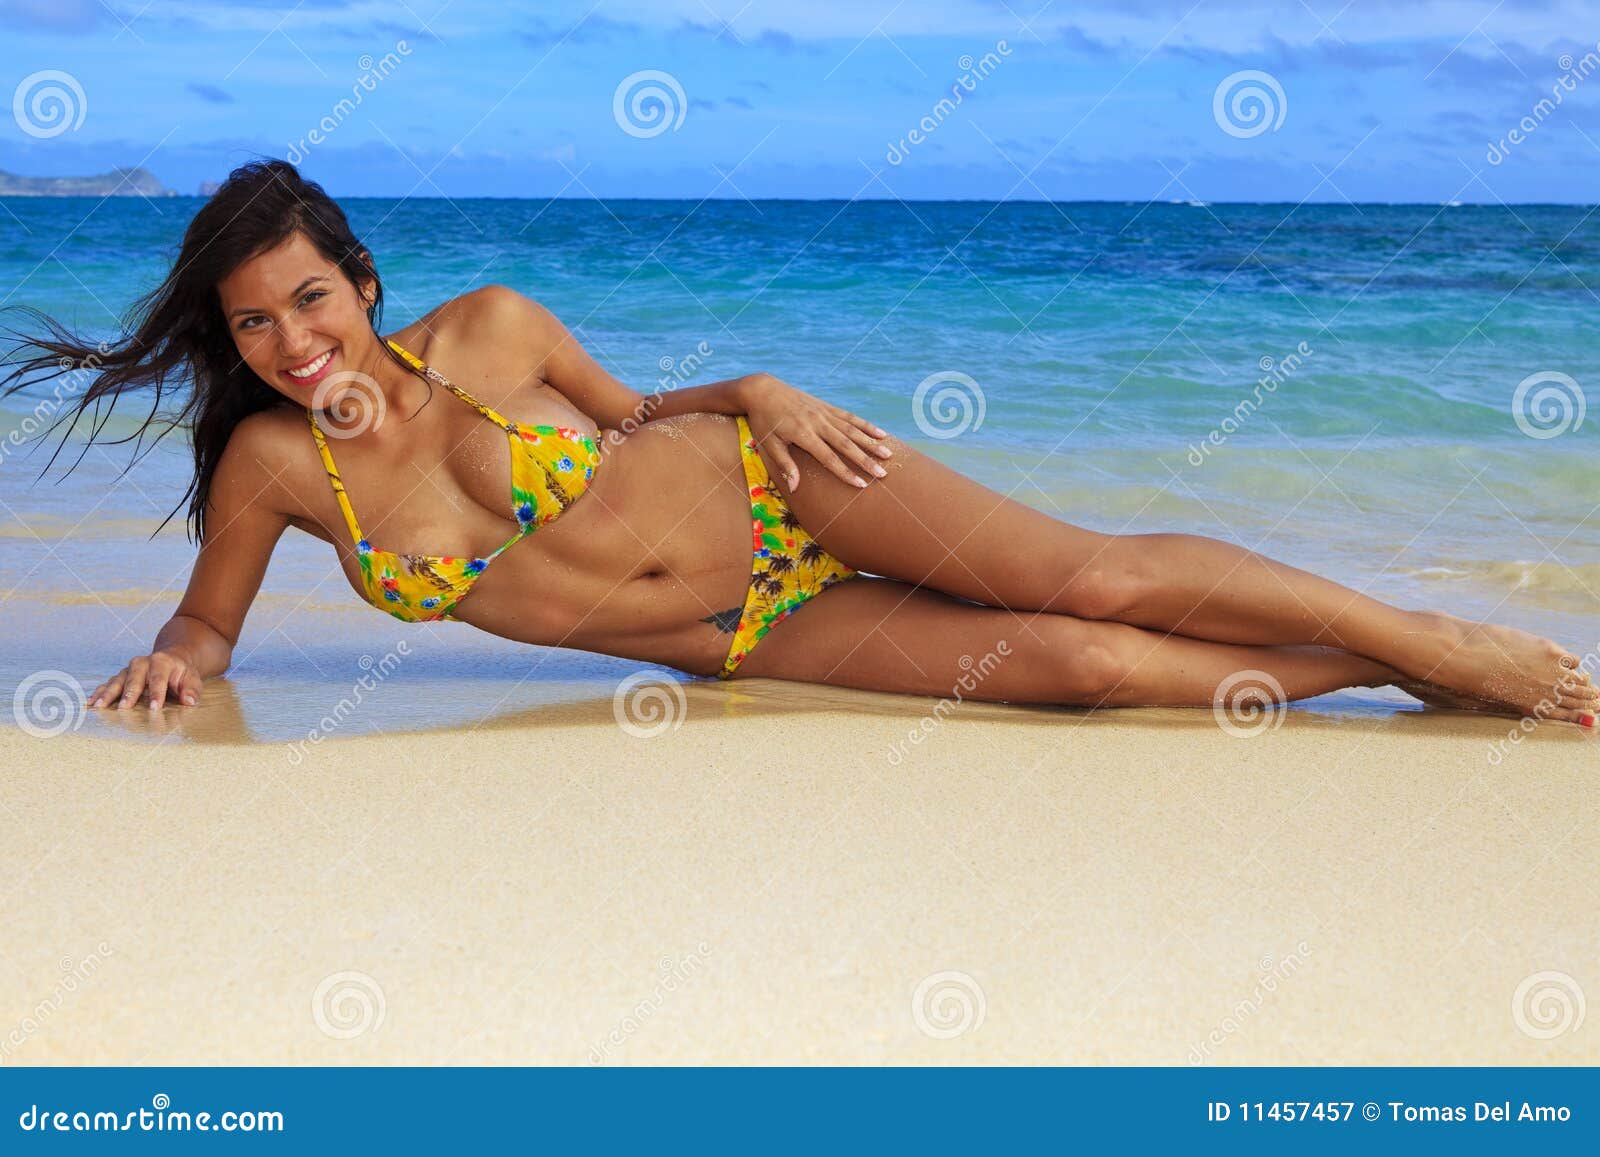 Beautiful Girl in a Yellow Bikini Stock Image